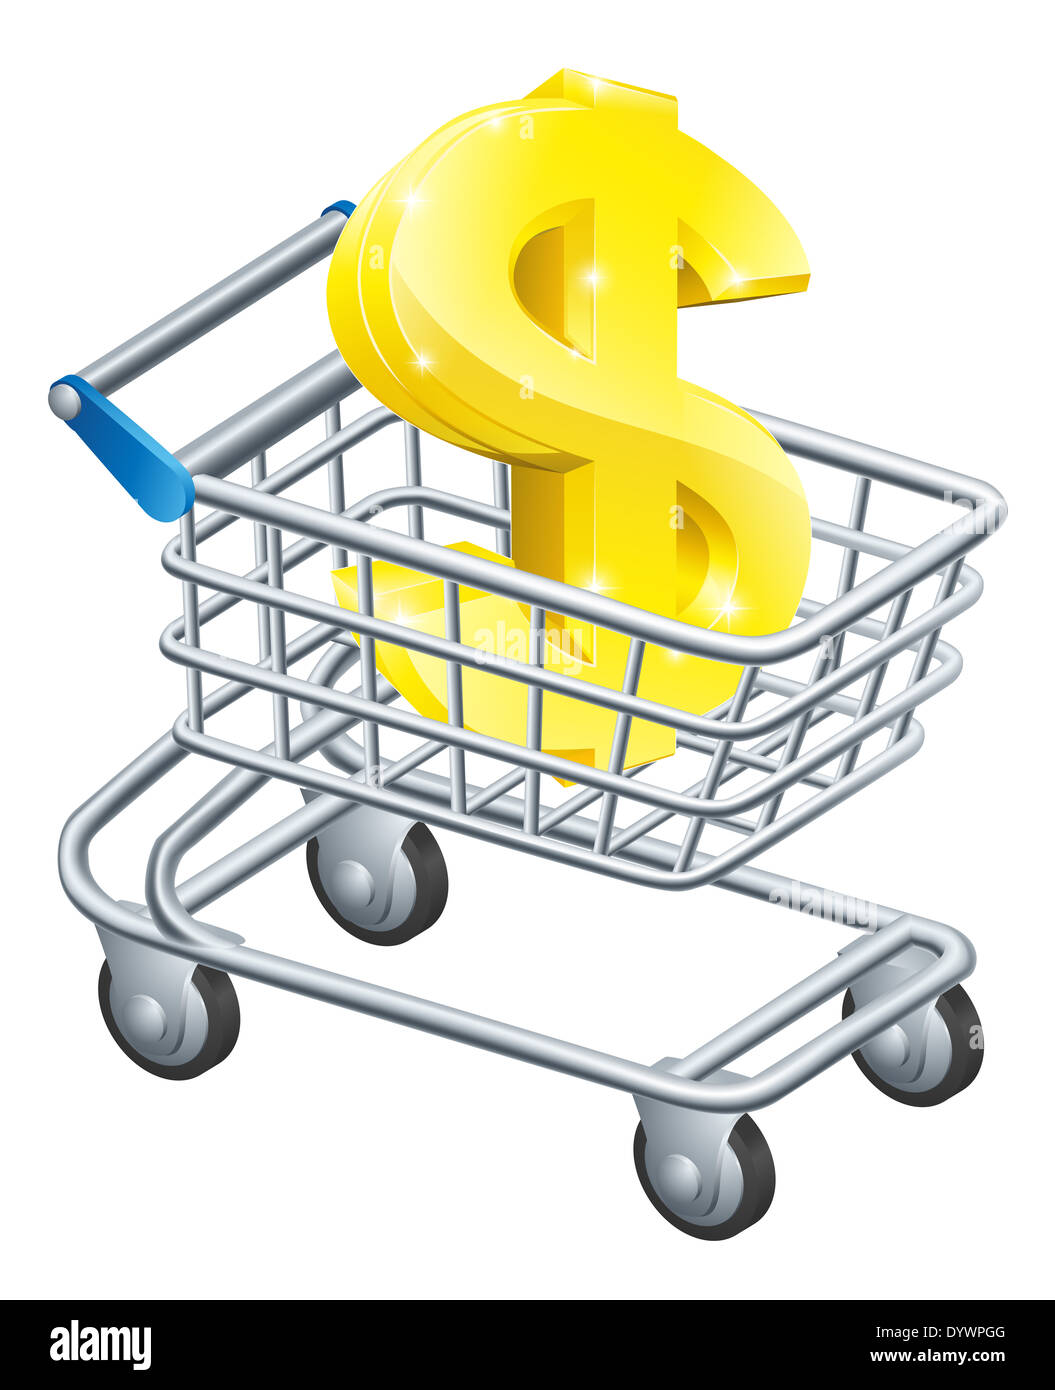 Dollar-Währung Trolley Konzept der Dollar-Zeichen in einem Supermarkt Einkaufswagen oder trolley Stockfoto